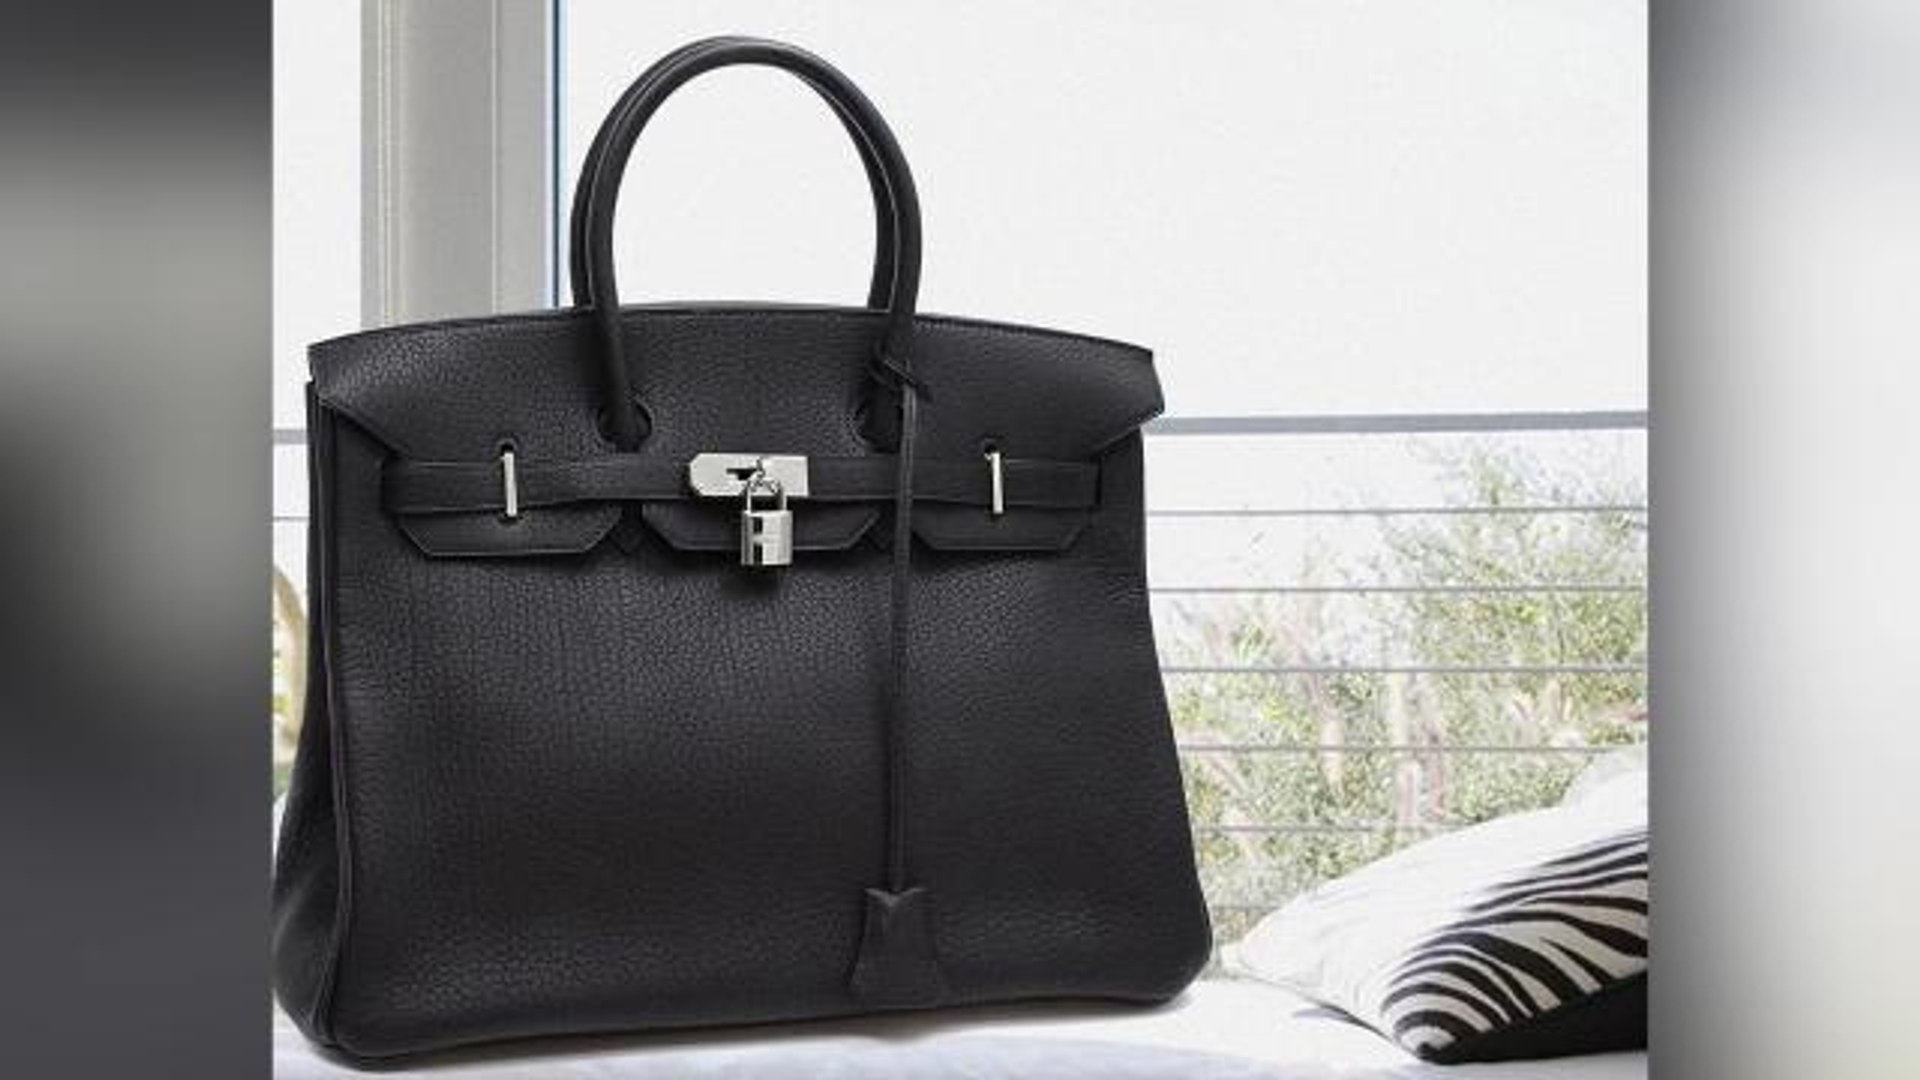 $20,000 Hermes Birkin Bags Returned For 